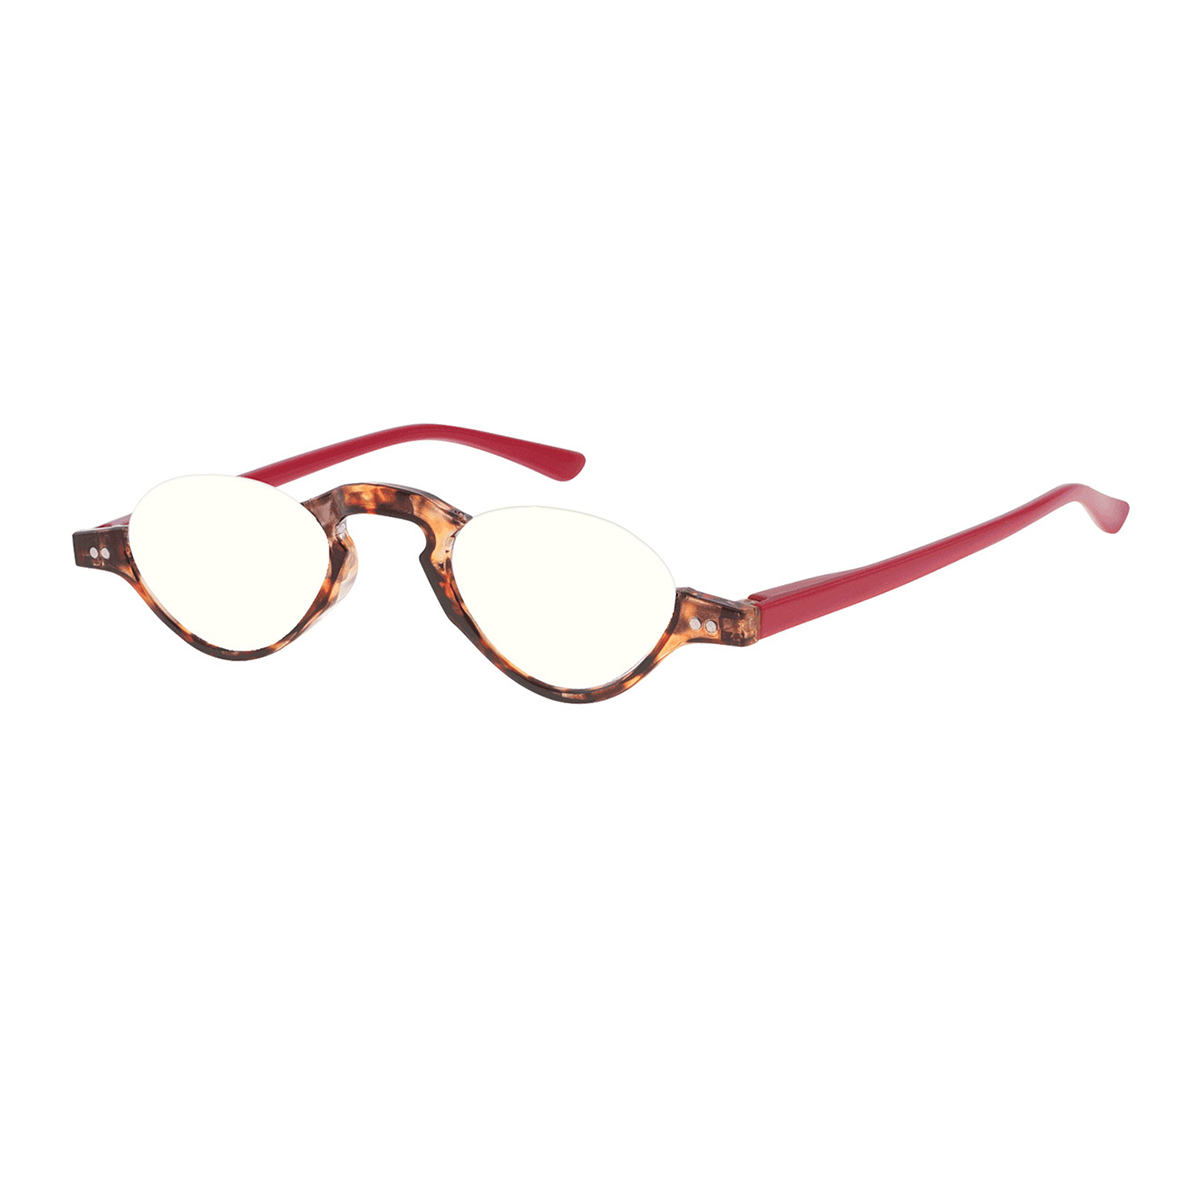 Athos - Oval Red-Demi Reading Glasses for Men & Women